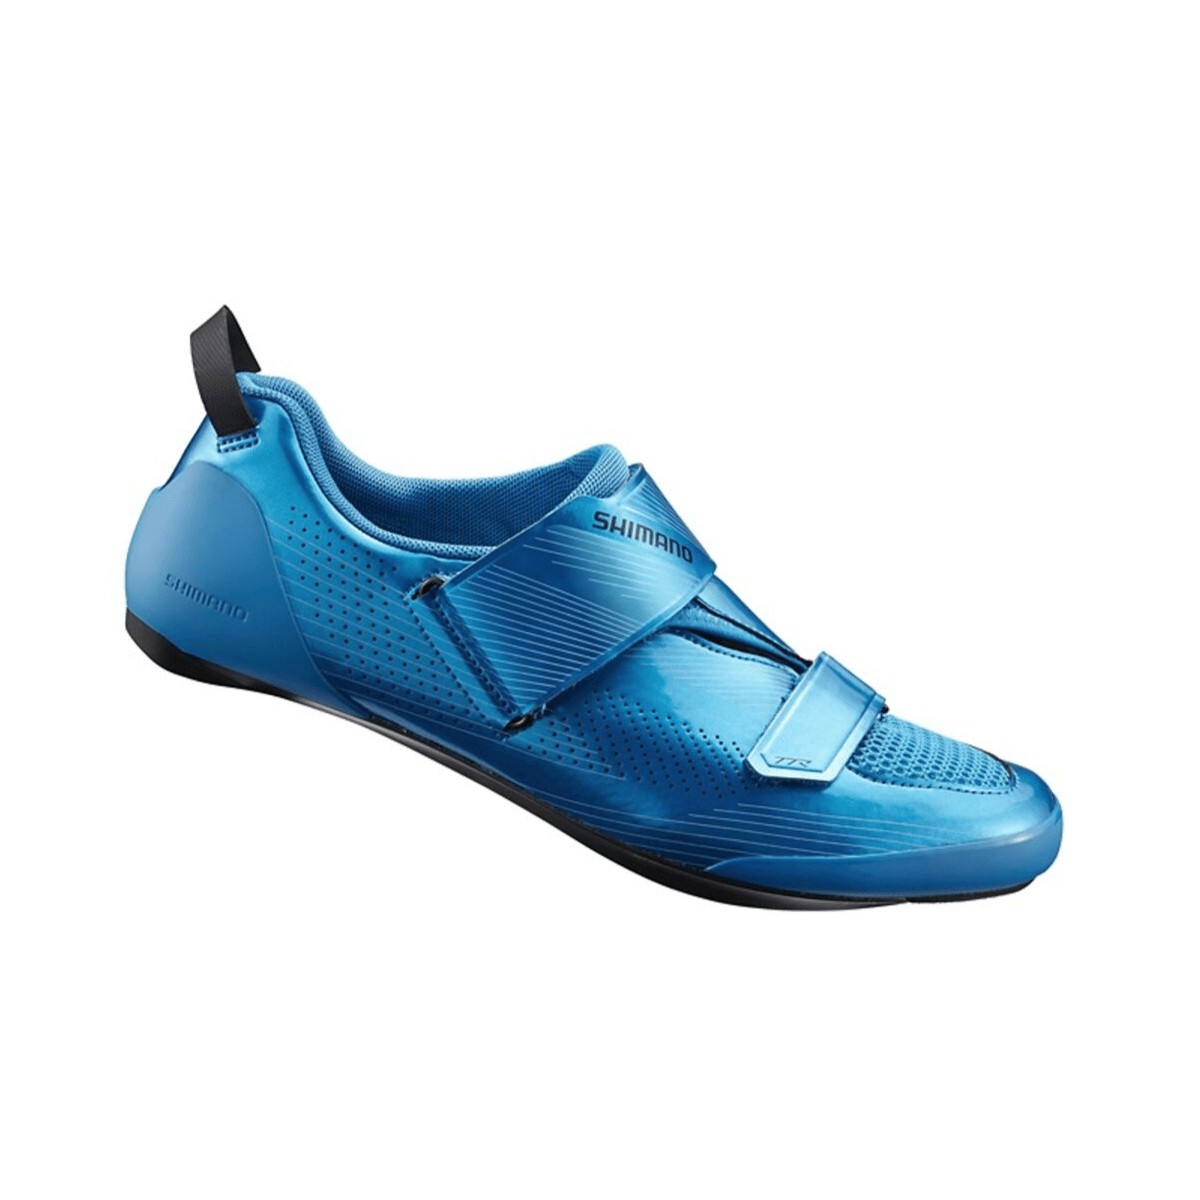 Shimano TR9 Triathlonschuhe blau, Größe 44,5 - EUR